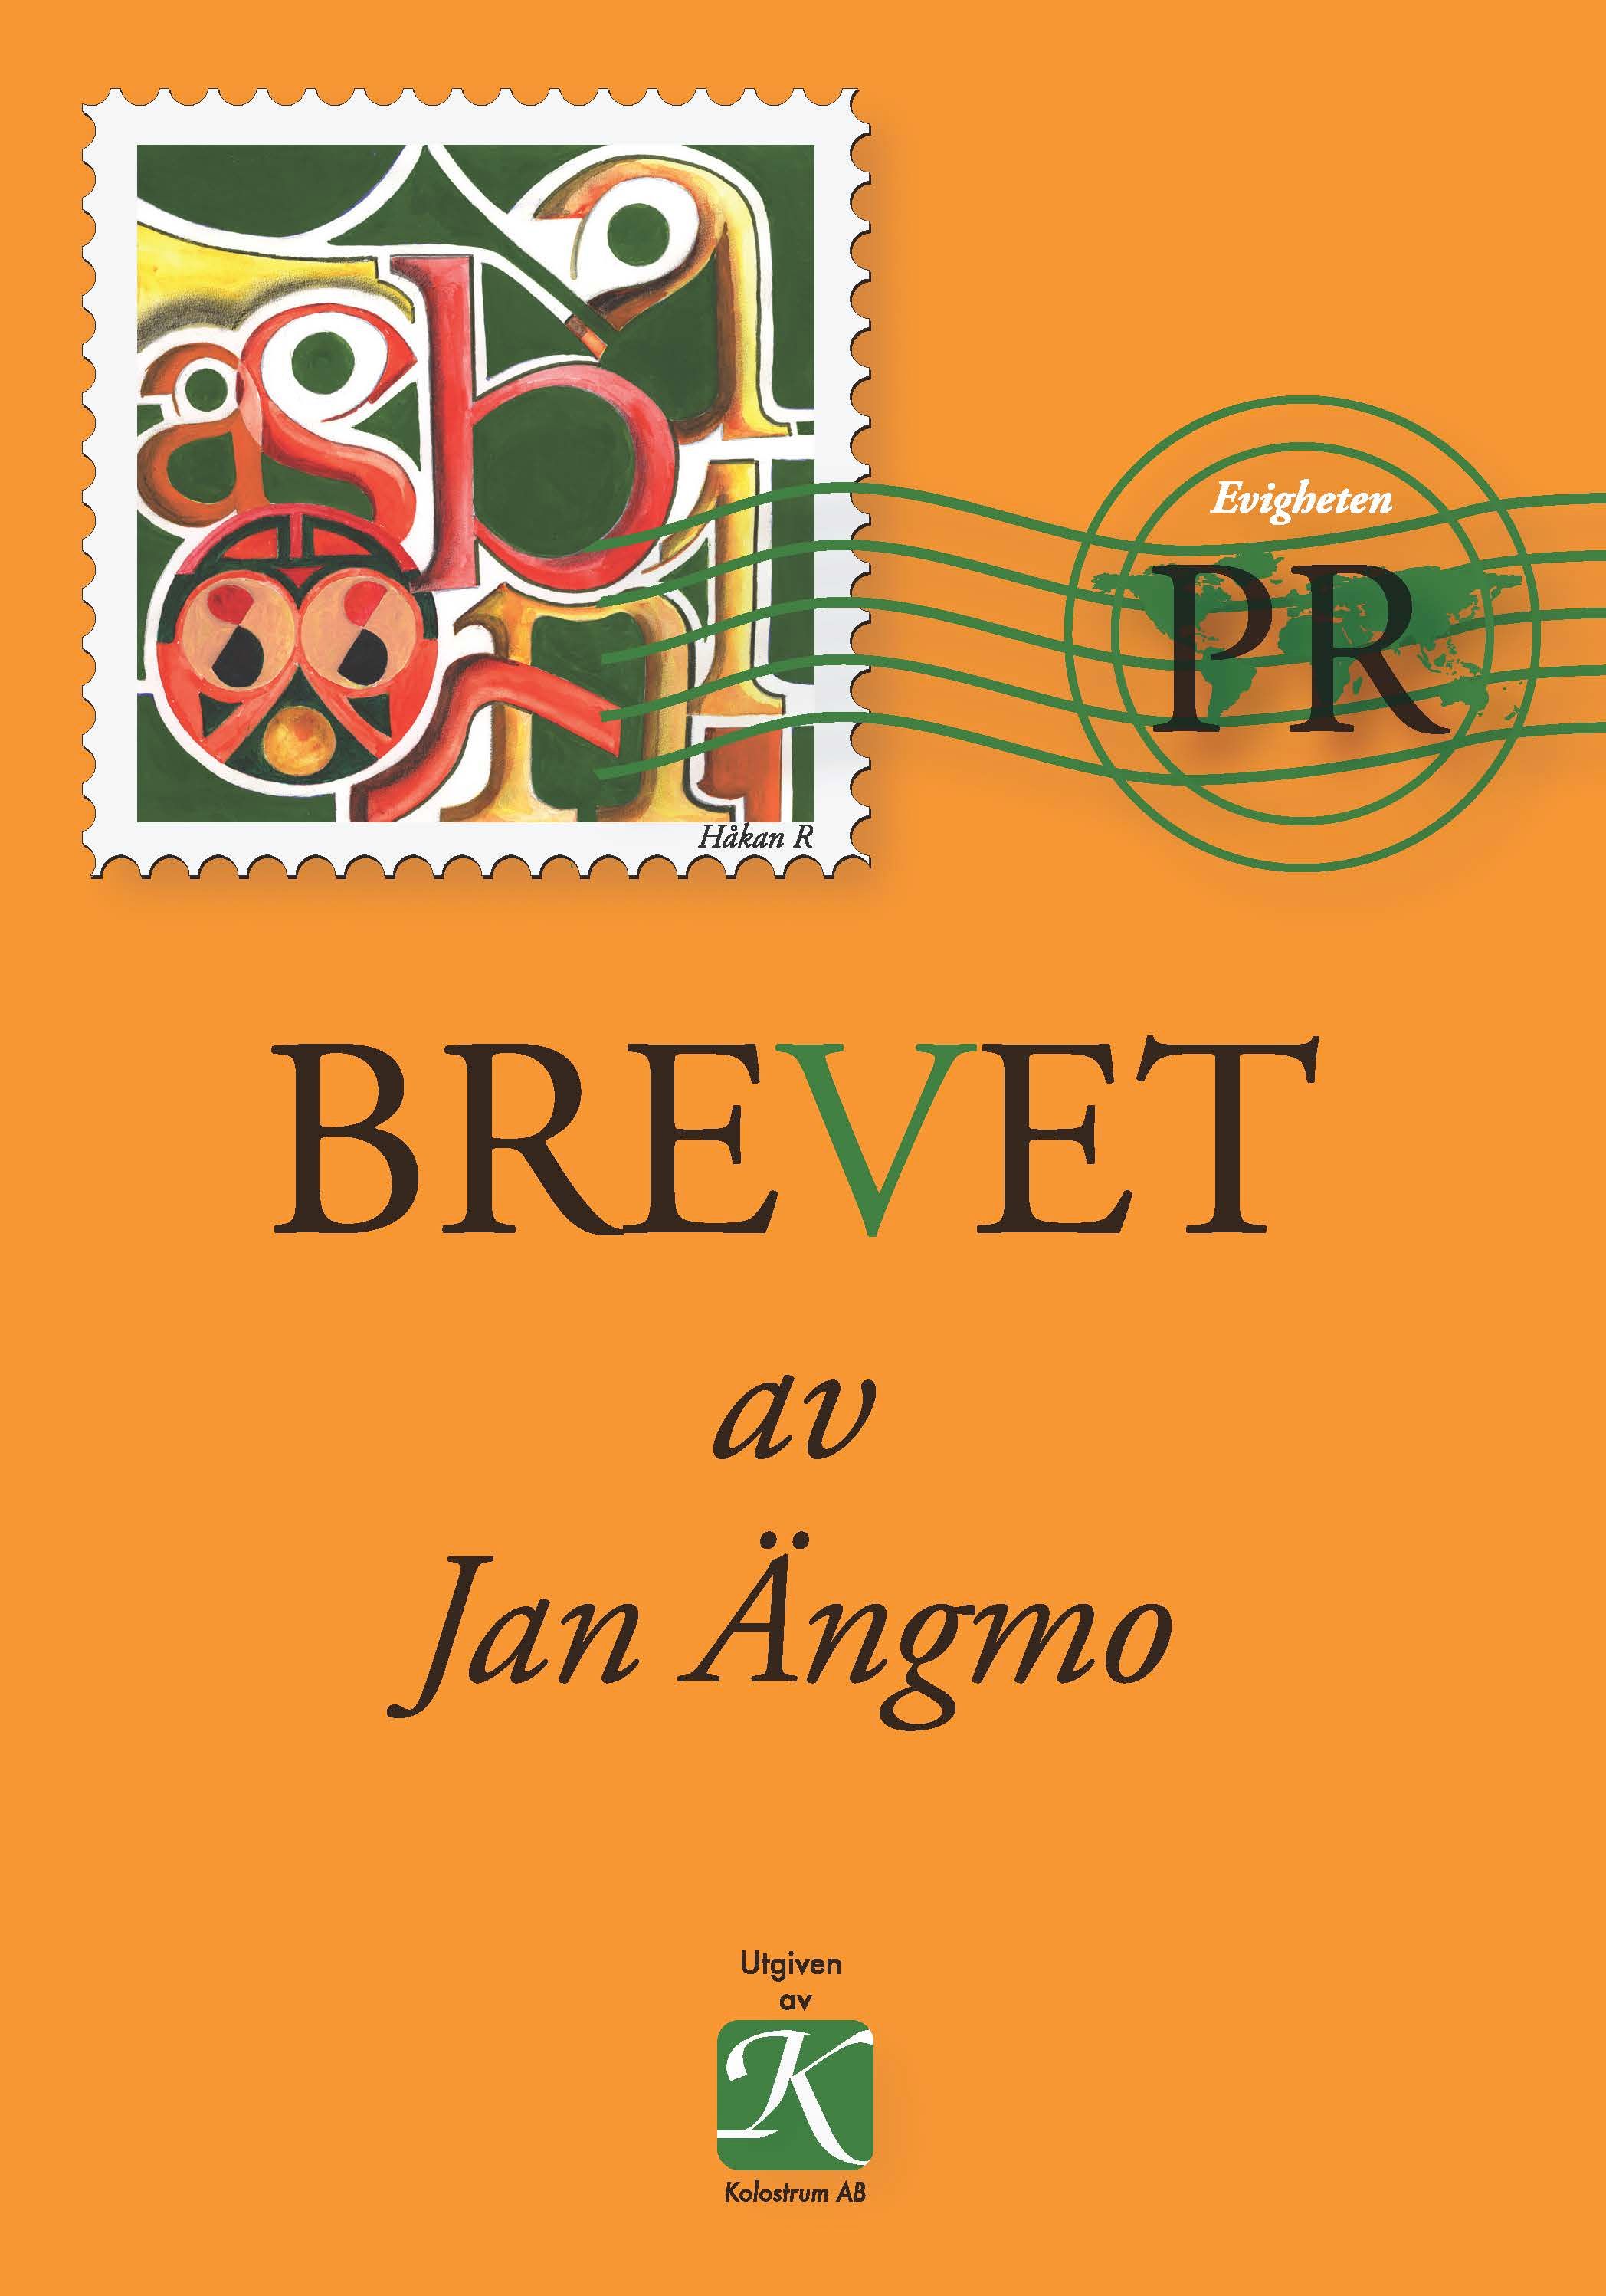 BREVET, e-bok av Jan Ängmo